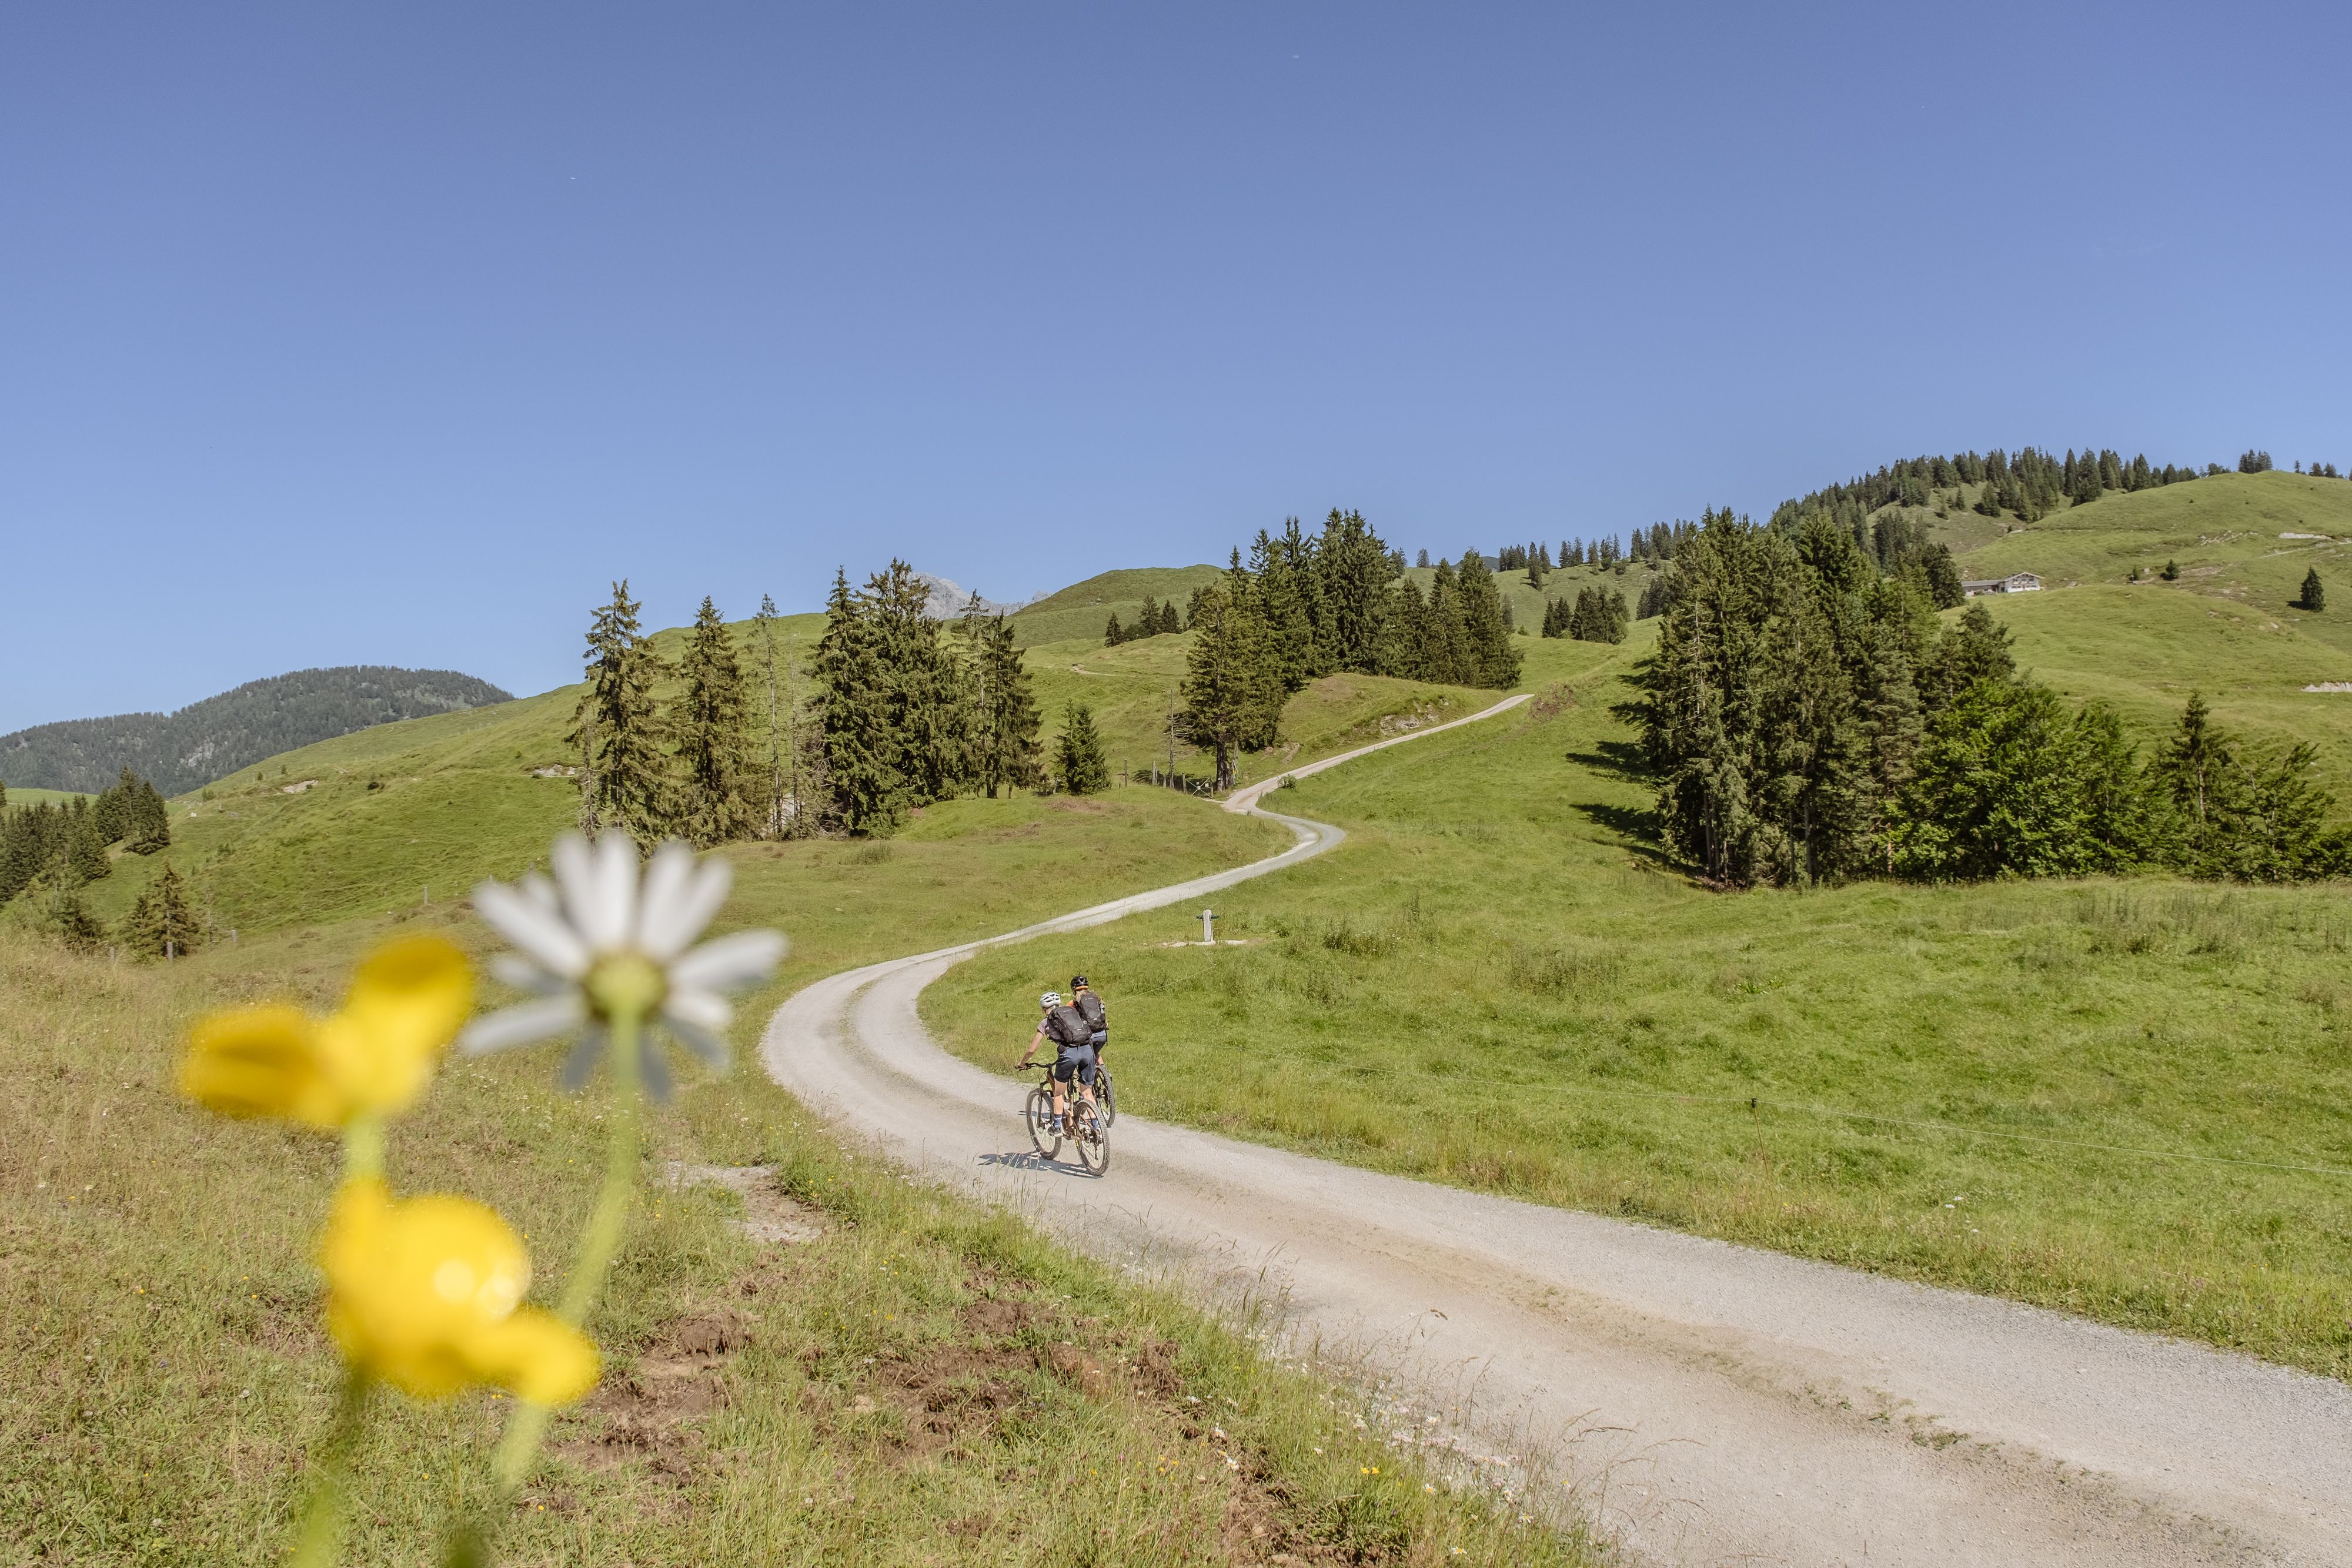 The Kalkalmen are a unique landscape you can explore bikepacking the KAT Bike Route through the Alps.